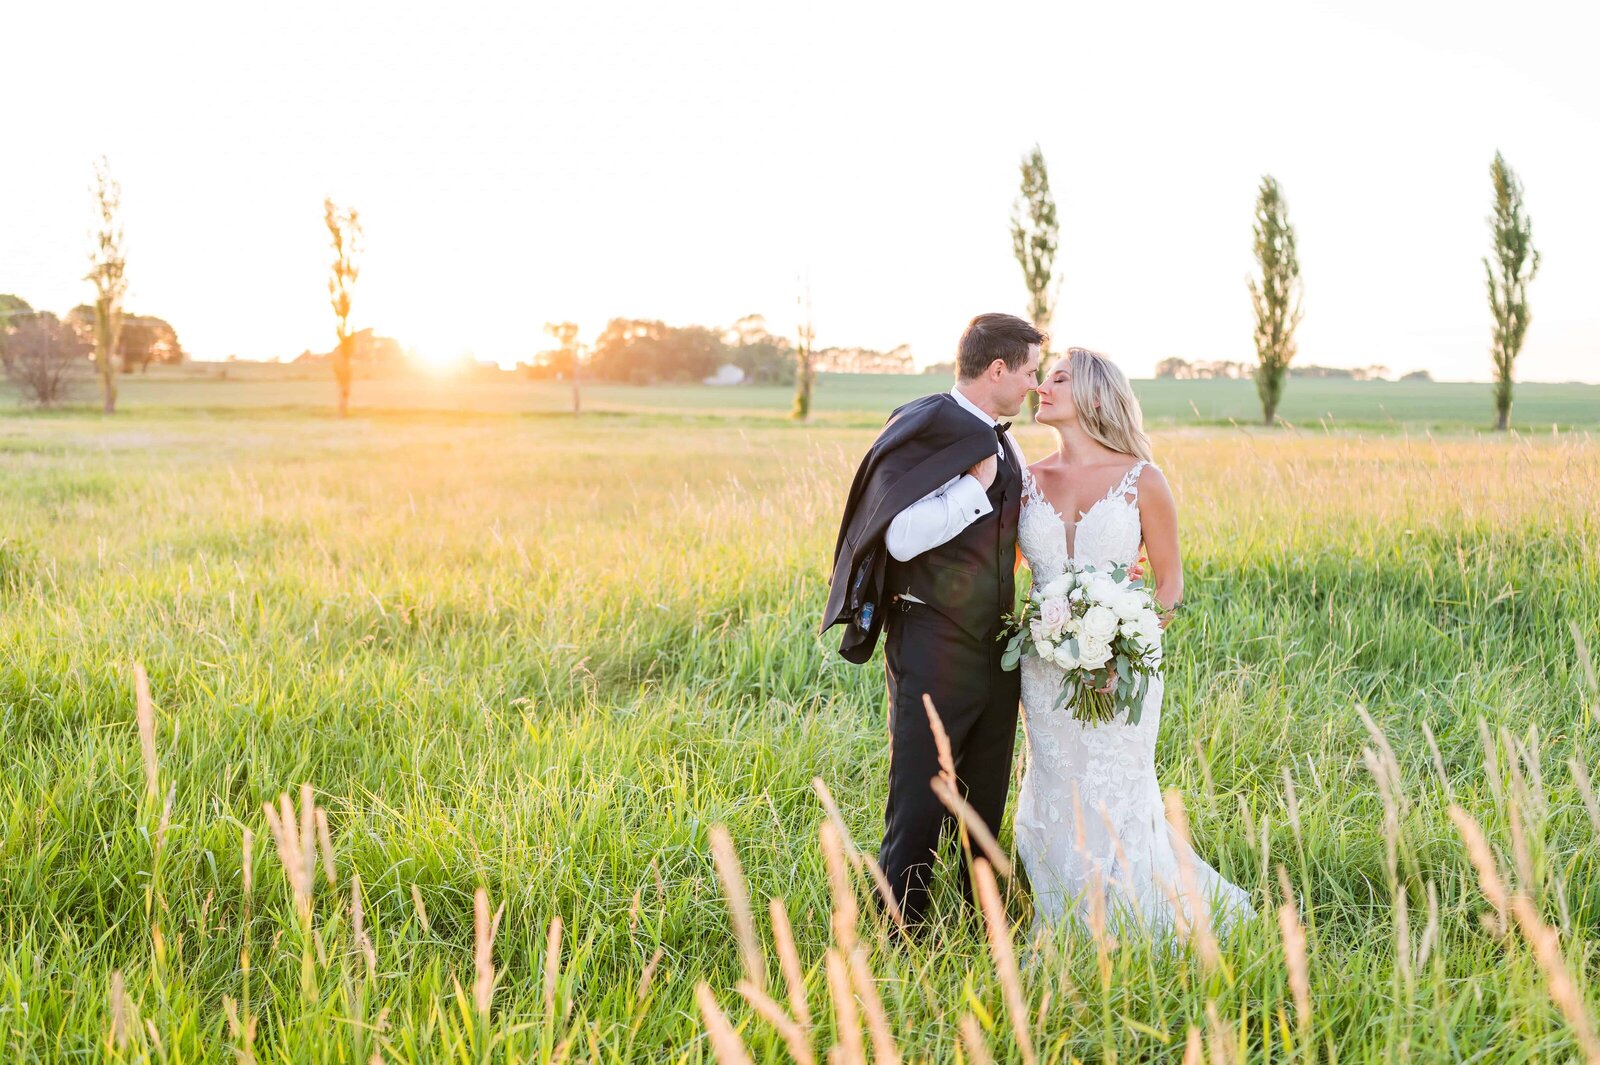 Sunset Wedding photos captured in Illinois